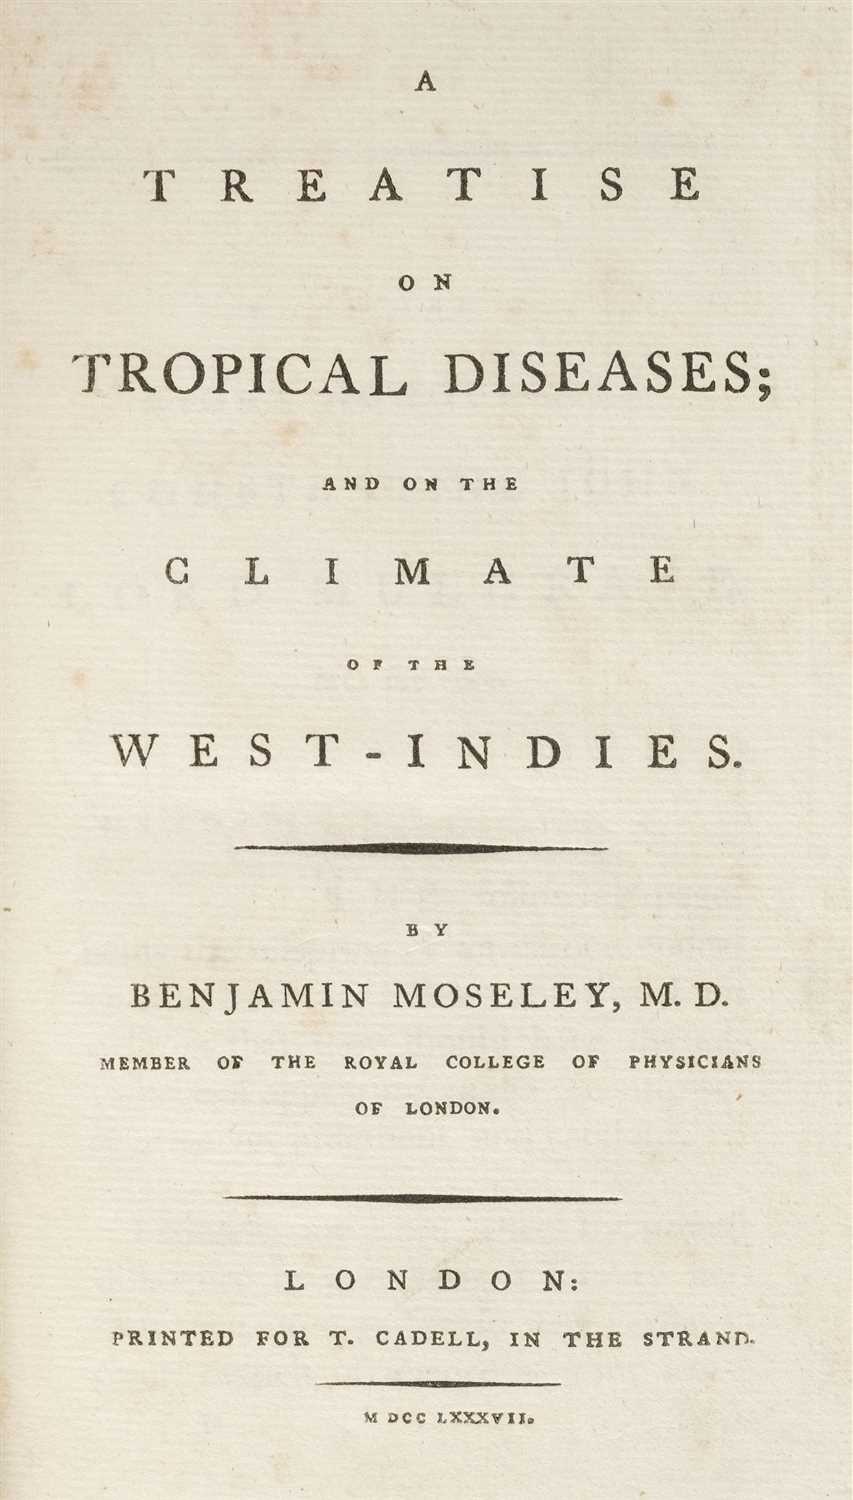 Lot 289 - Moseley (Benjamin). A Treatise of Tropical Diseases, 1787